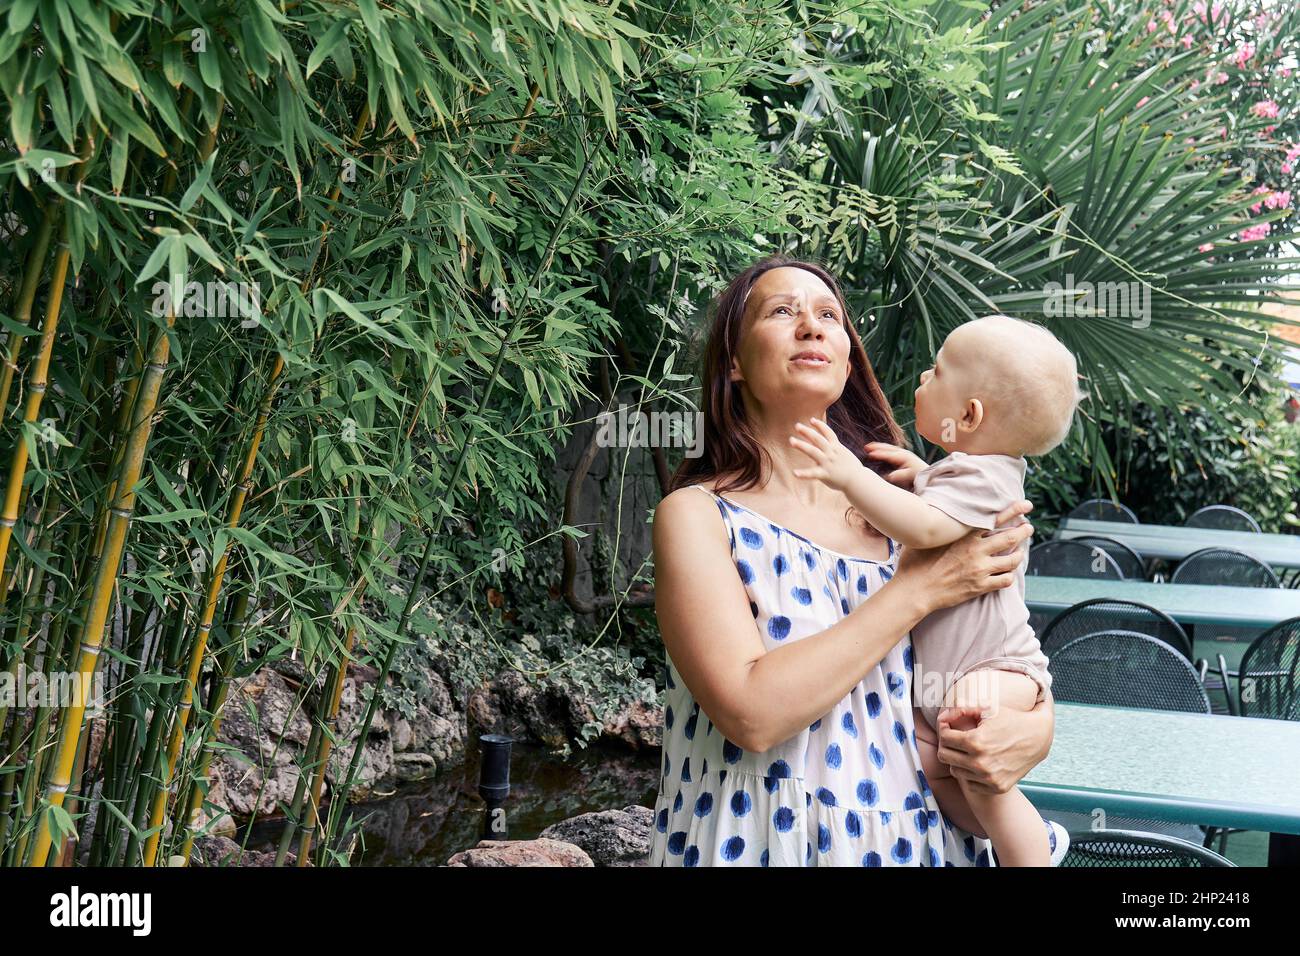 Die junge Mutter hält ein blondes Baby in Armen, das im Bambuswald spazieren geht. Dunkelhaarige Frau und Kind genießen frische Luft und entspannen sich im Urlaub in den Tropen Stockfoto